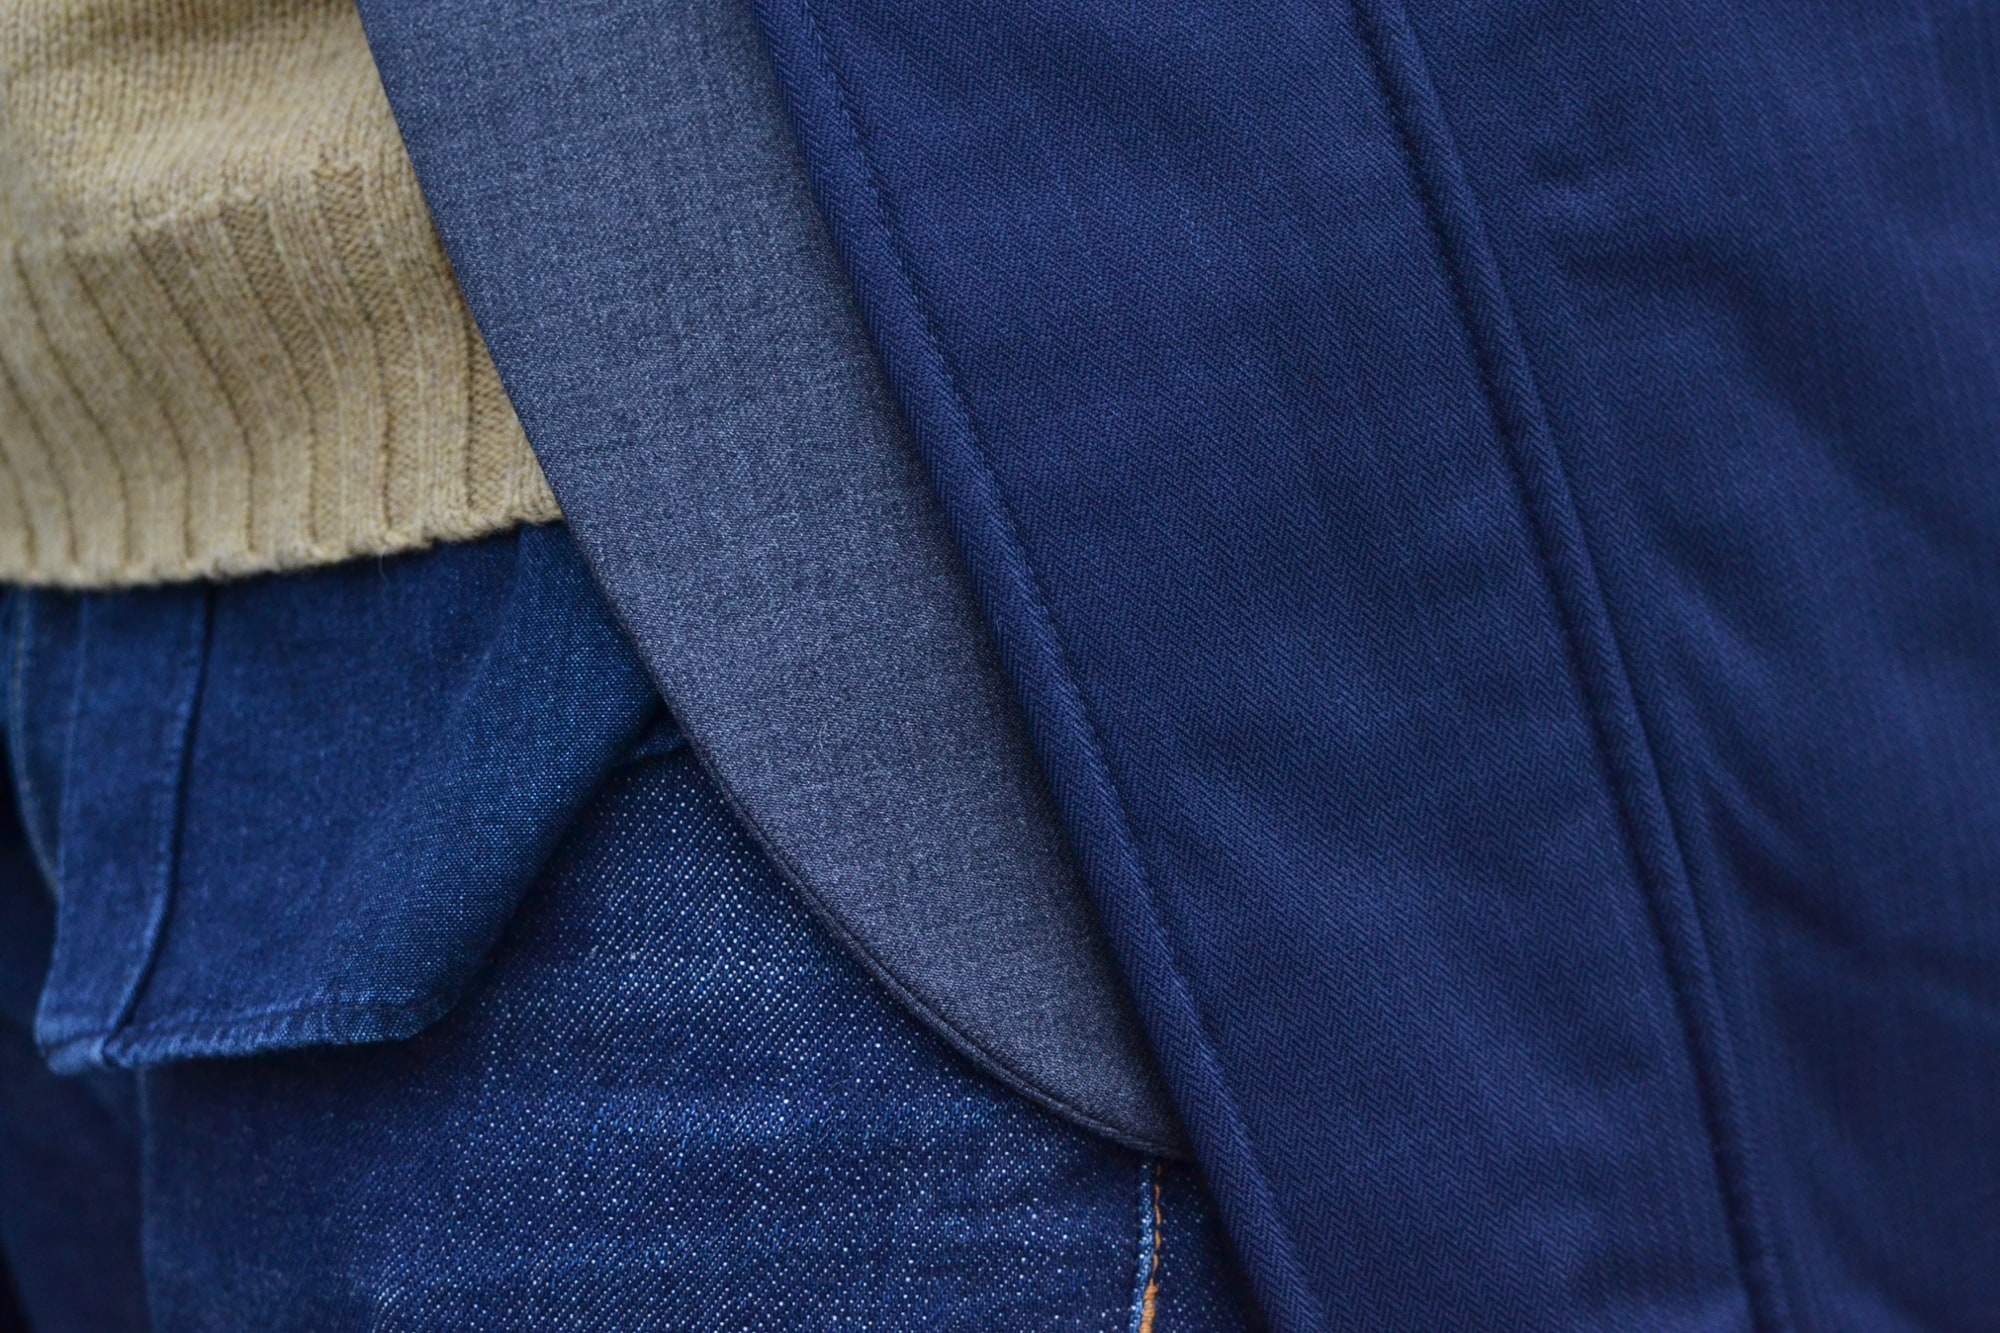 style casual chic et détails de matières, couleurs et textures avec ce blazer en laine grise, ce pull shetland jaune et une touche de coton indigo